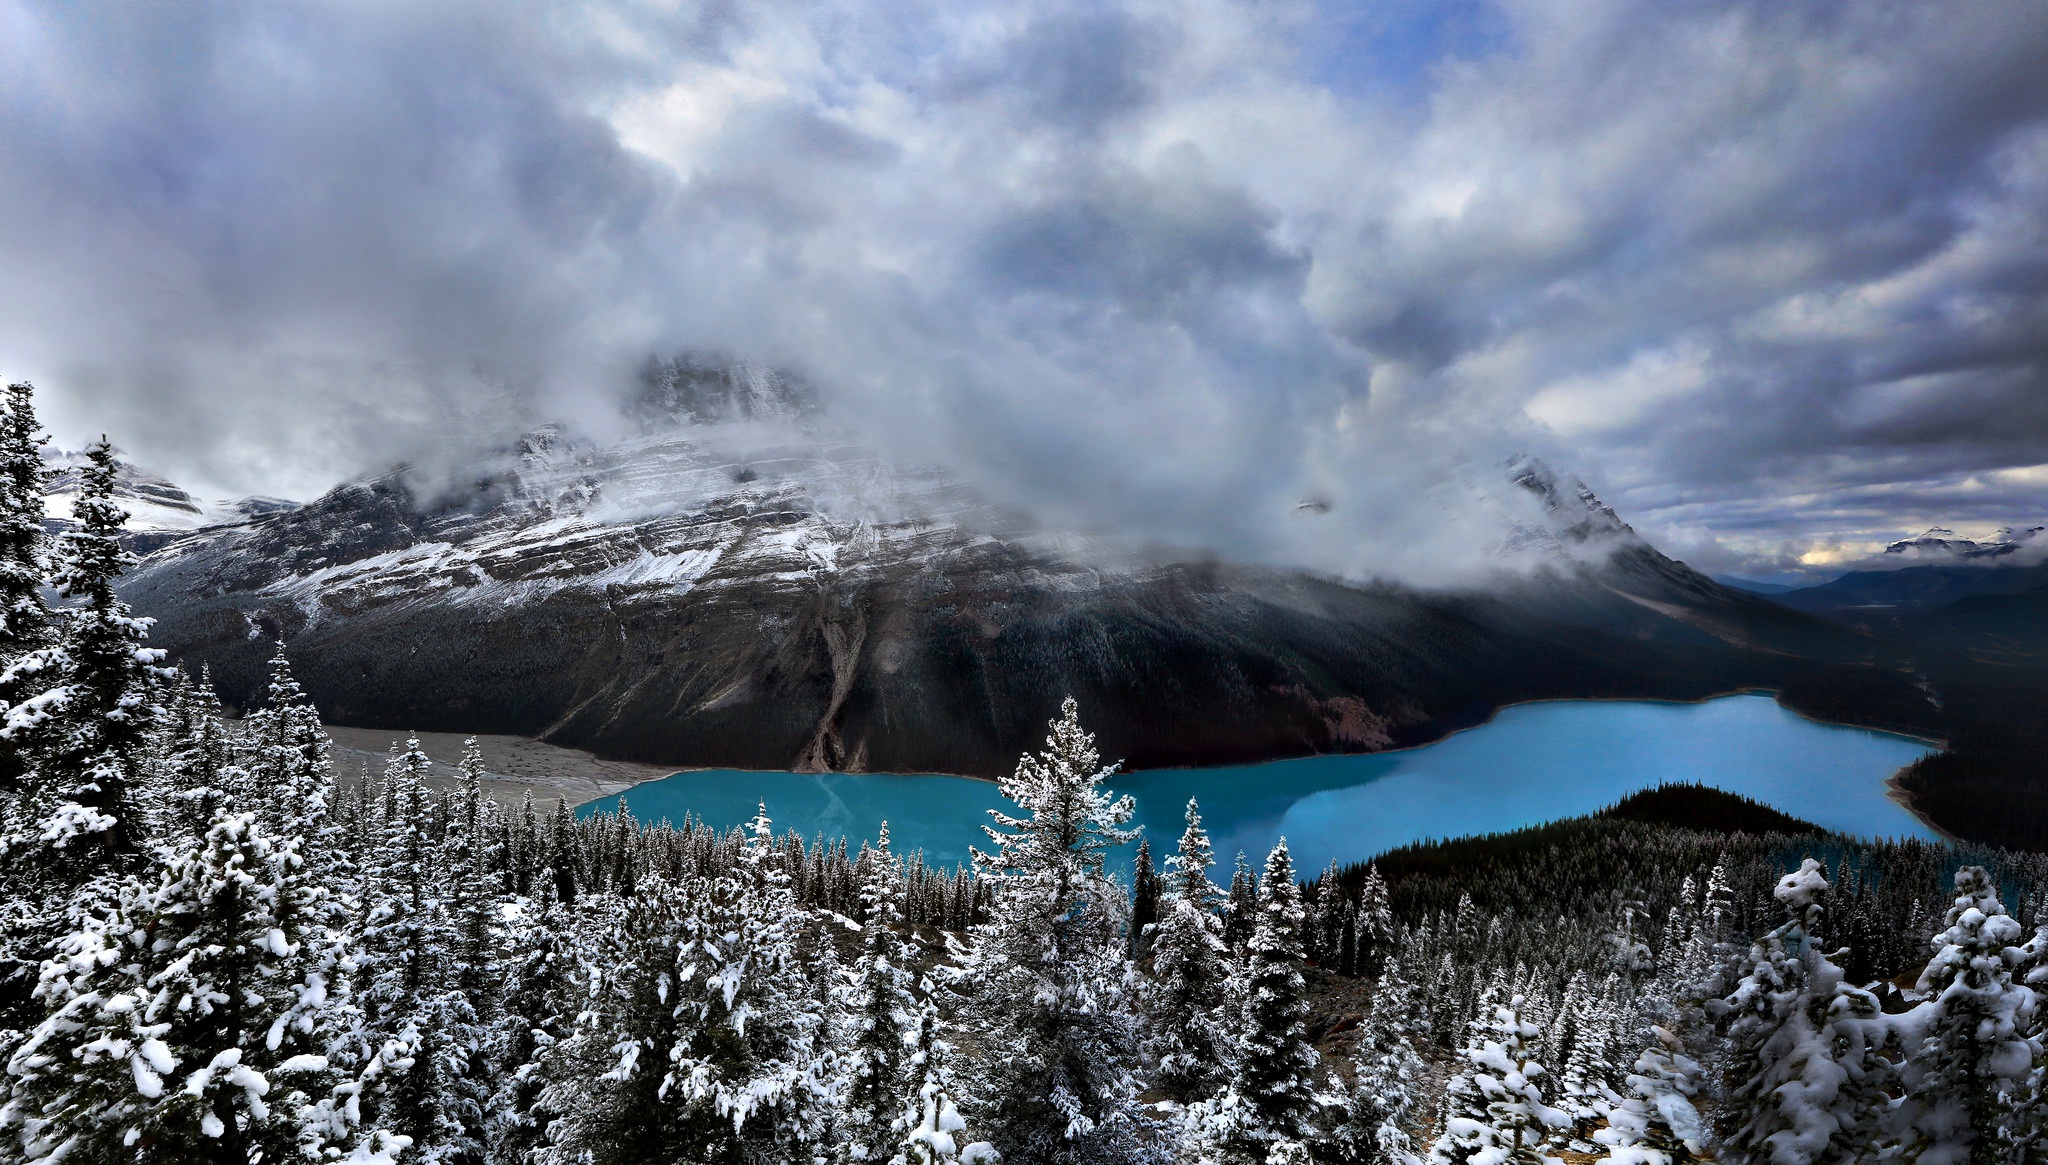 Descarga gratuita de fondo de pantalla para móvil de Invierno, Nieve, Montaña, Lago, Canadá, Bosque, Parque Nacional Banff, Tierra/naturaleza.